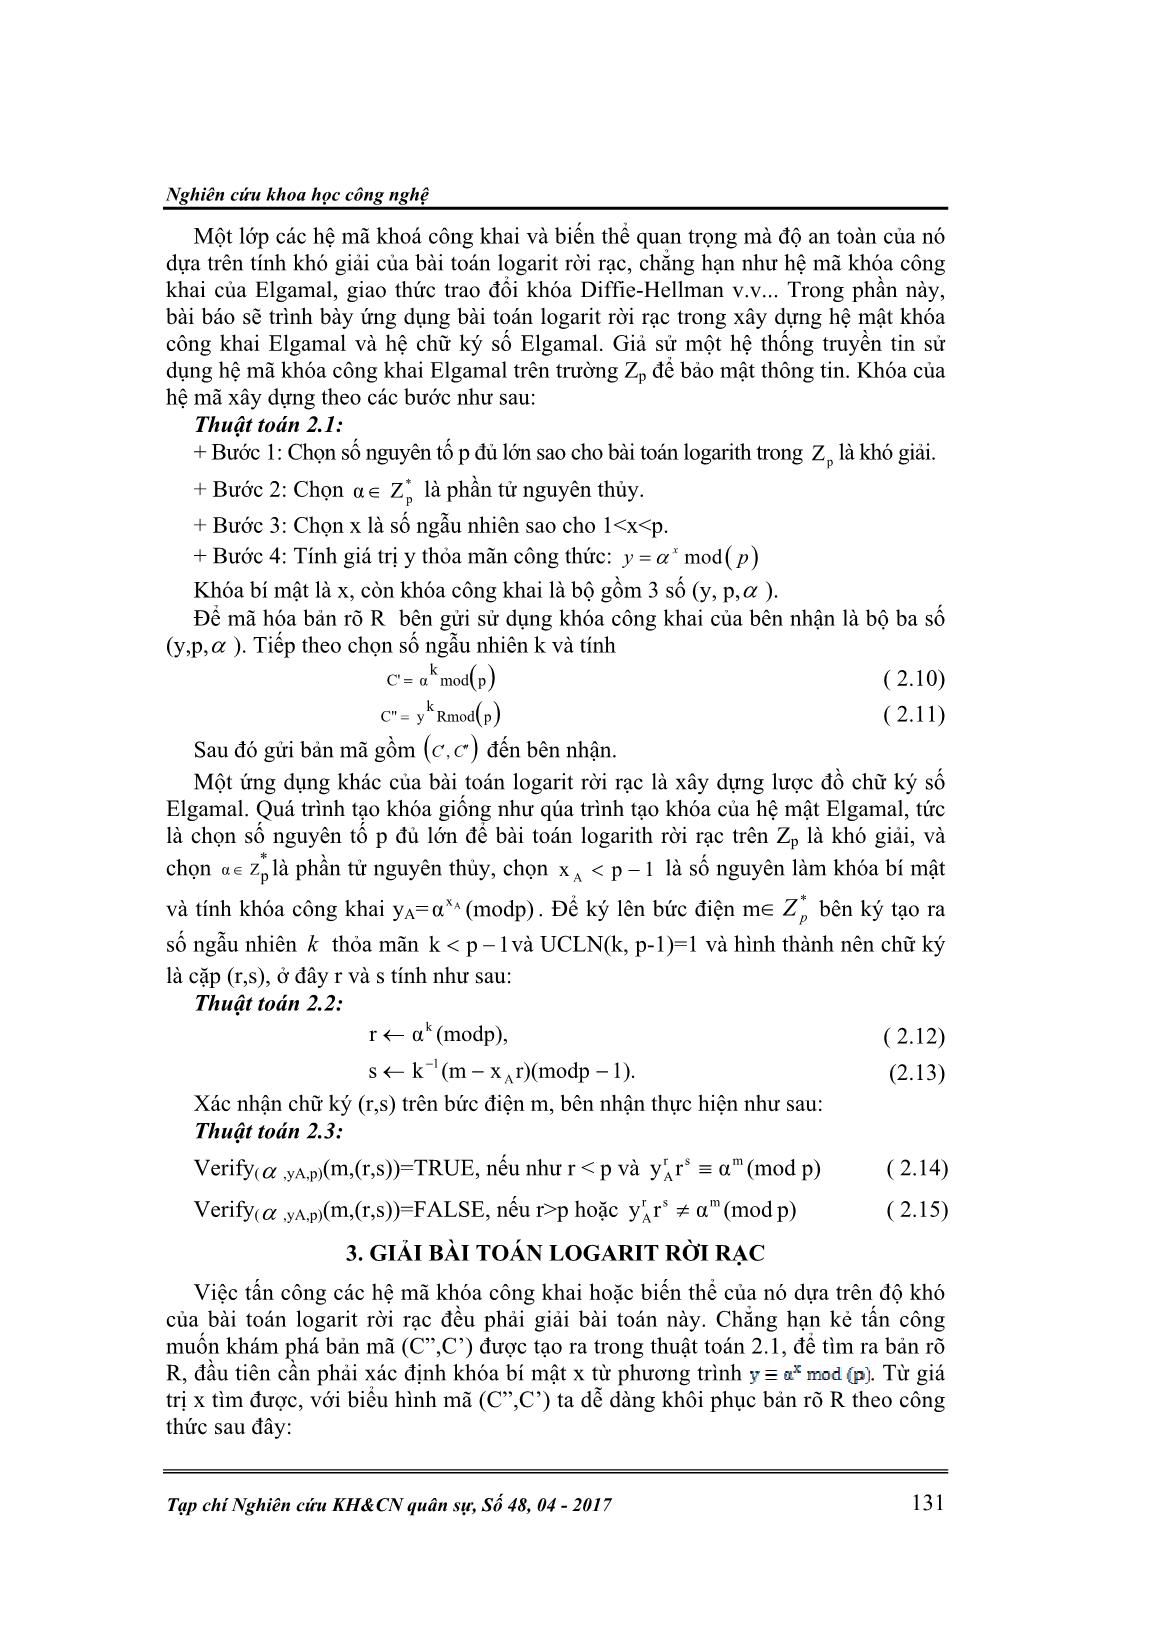 Phát triển thuật toán của Danied Shank để giải bài toán Logarit rời rạc trên vành Zn trang 3